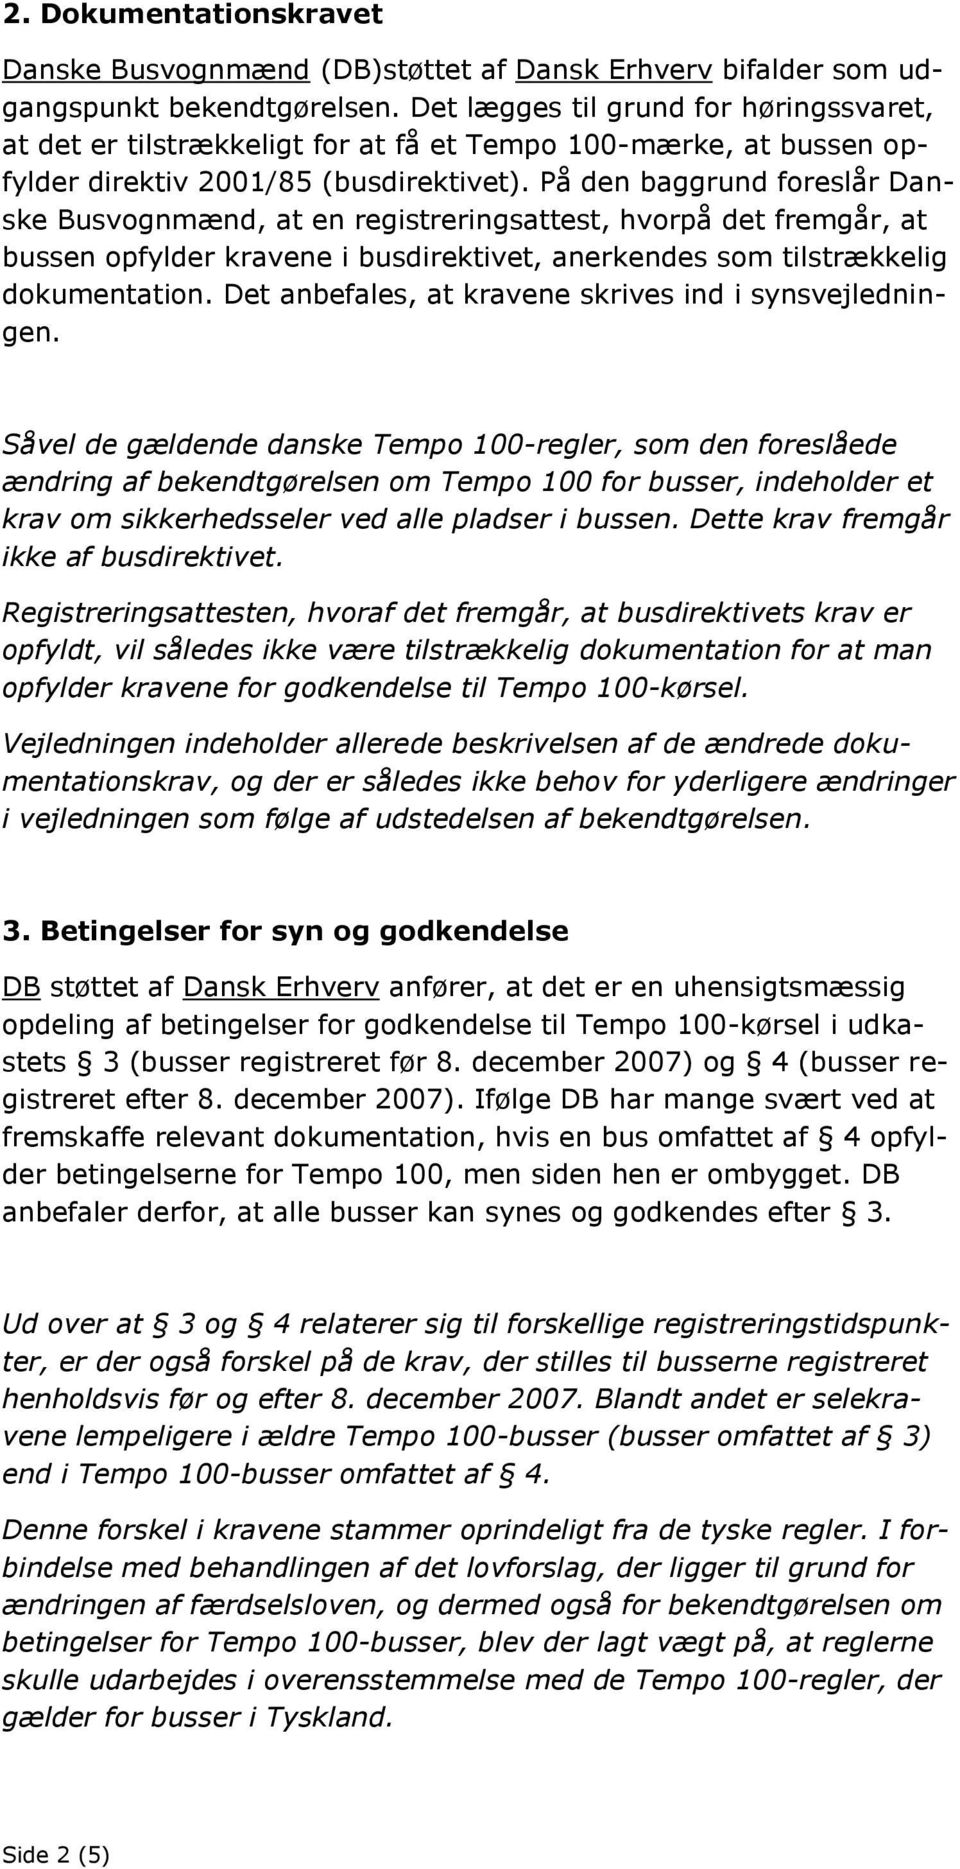 På den baggrund foreslår Danske Busvognmænd, at en registreringsattest, hvorpå det fremgår, at bussen opfylder kravene i busdirektivet, anerkendes som tilstrækkelig dokumentation.